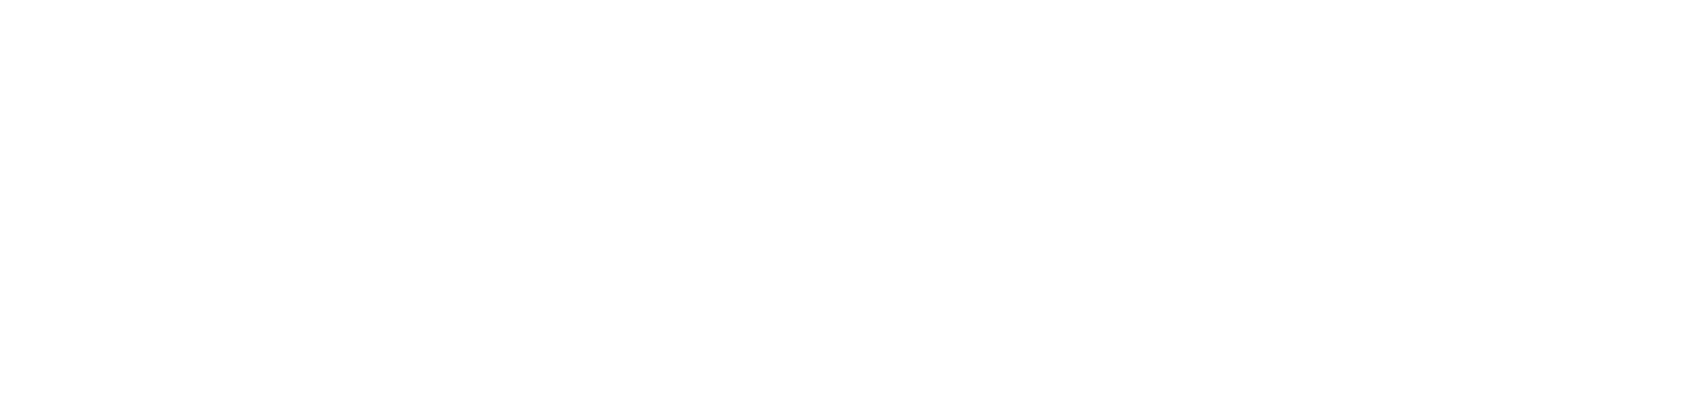 Shape of water logo